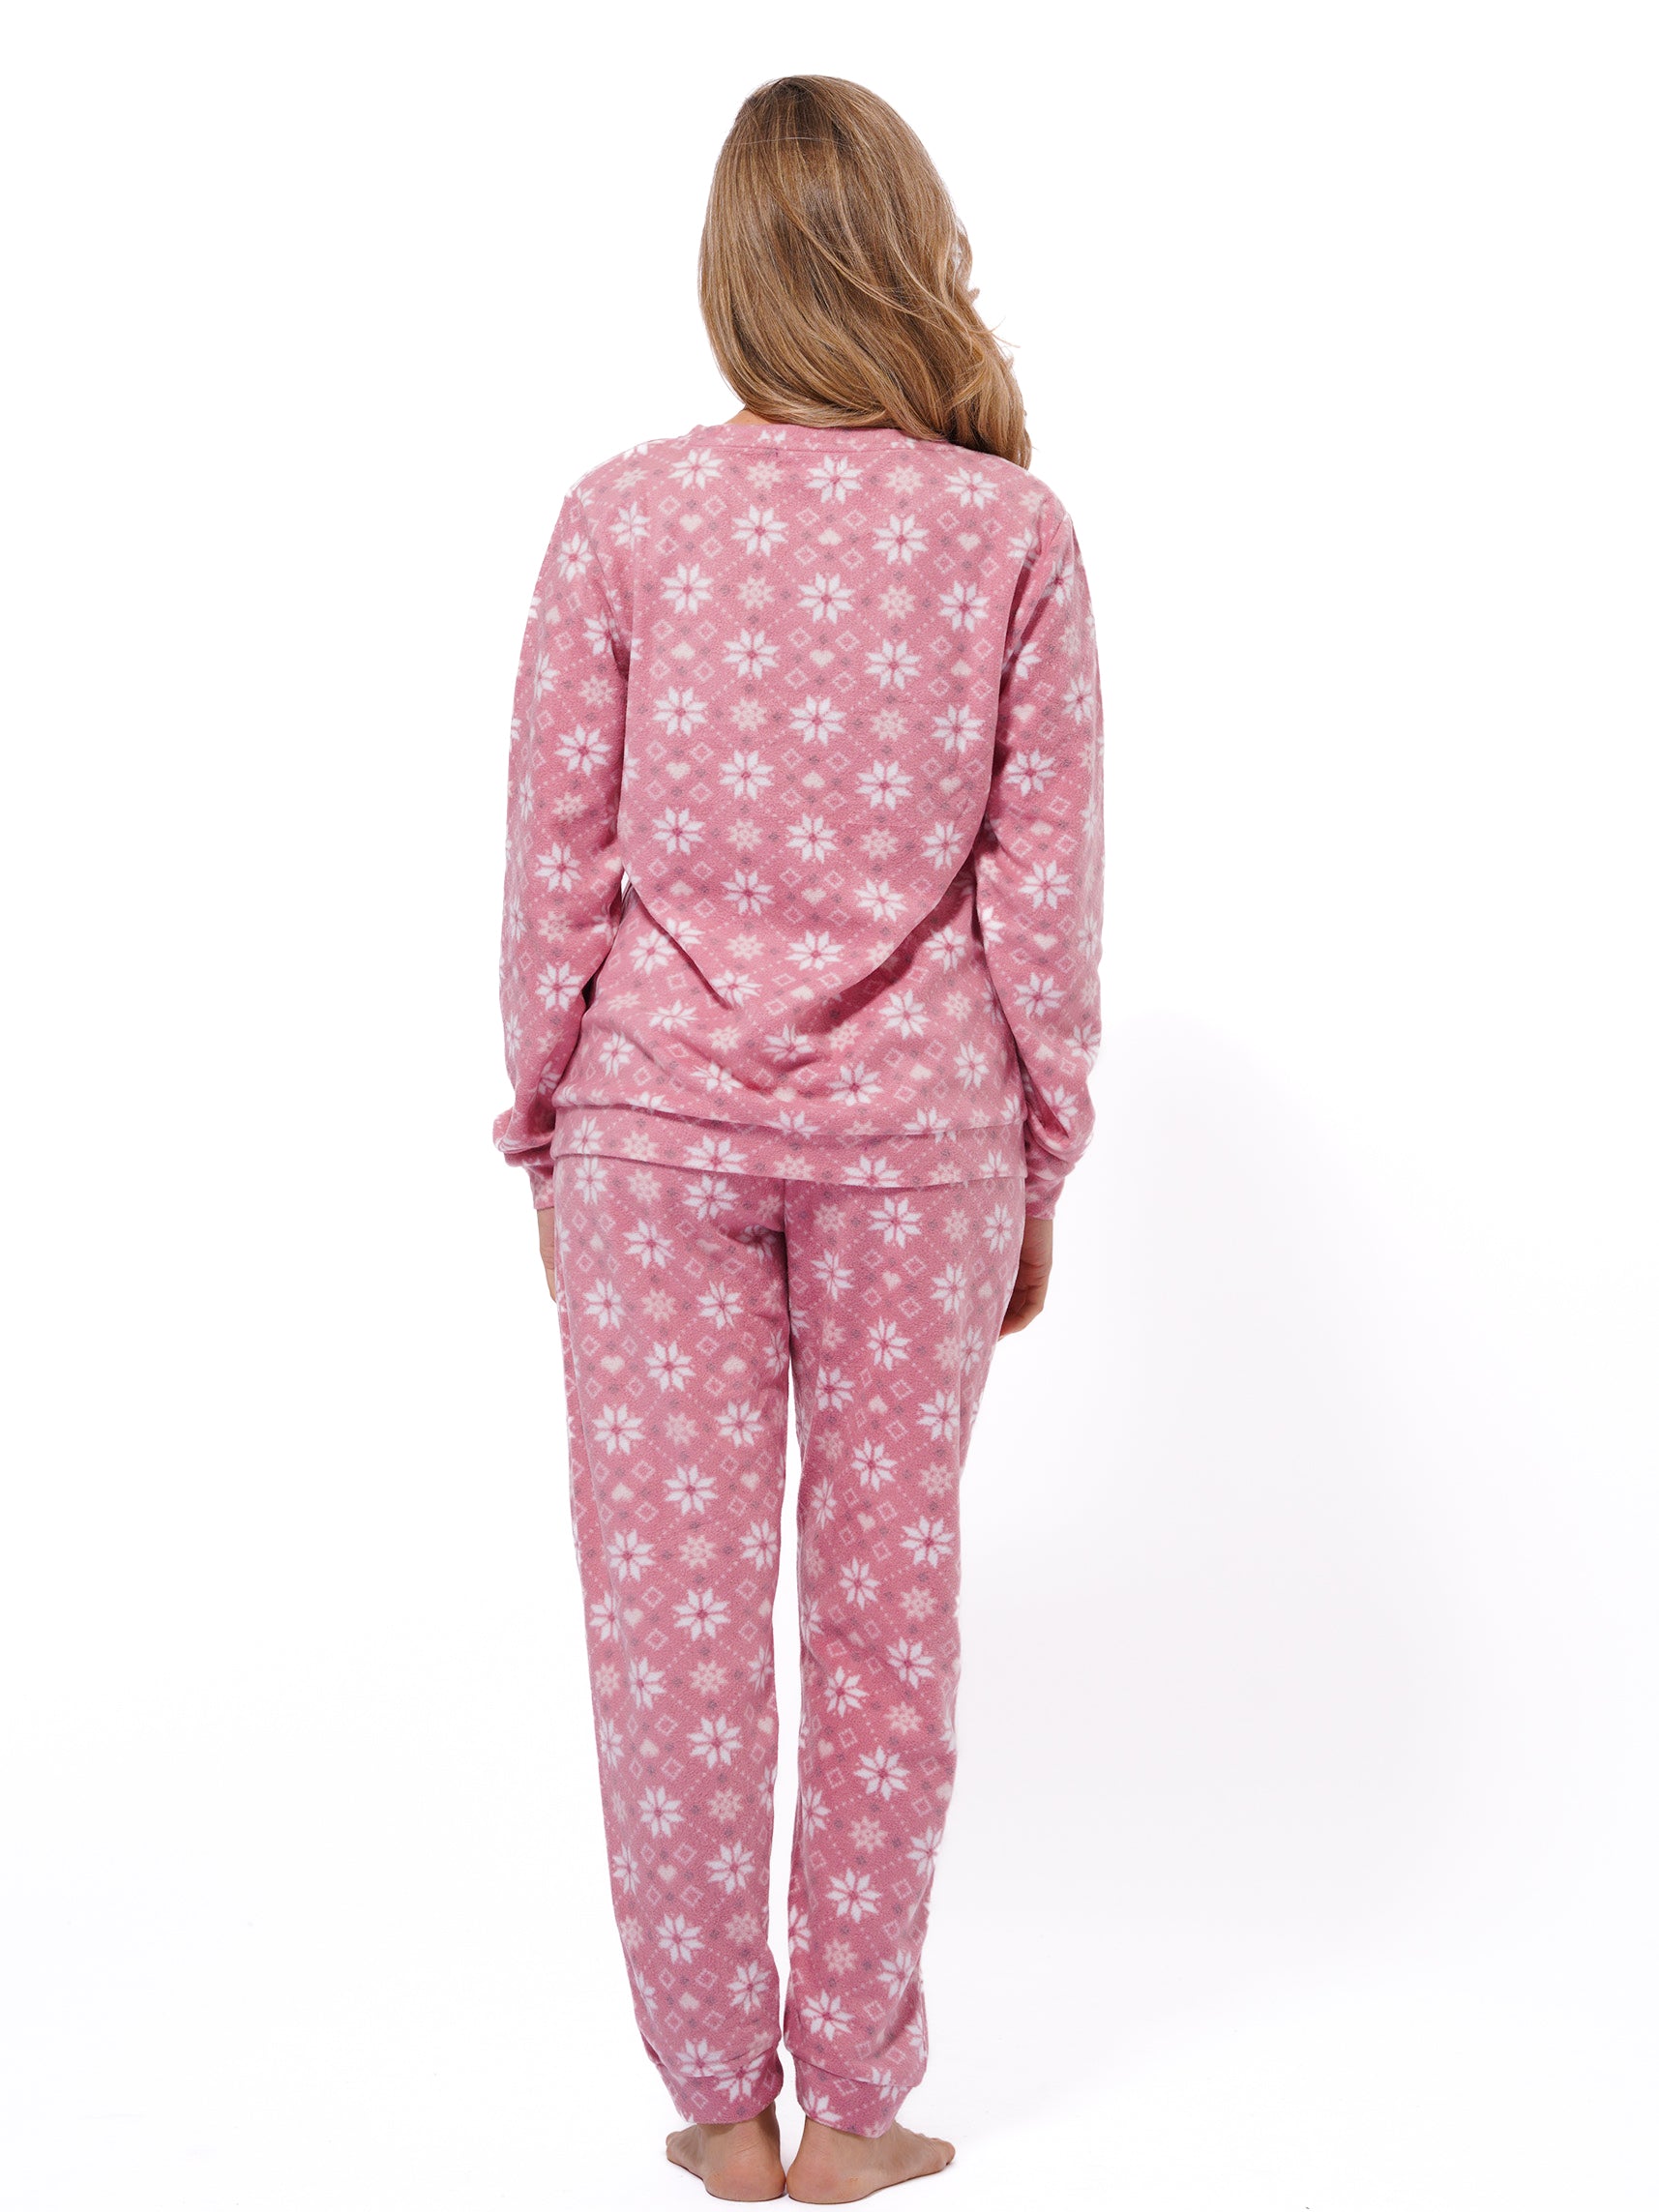 Micro Polar Fleece  Star Print Women Sleepwear Long Sleeve Pyjama Set - inteblu